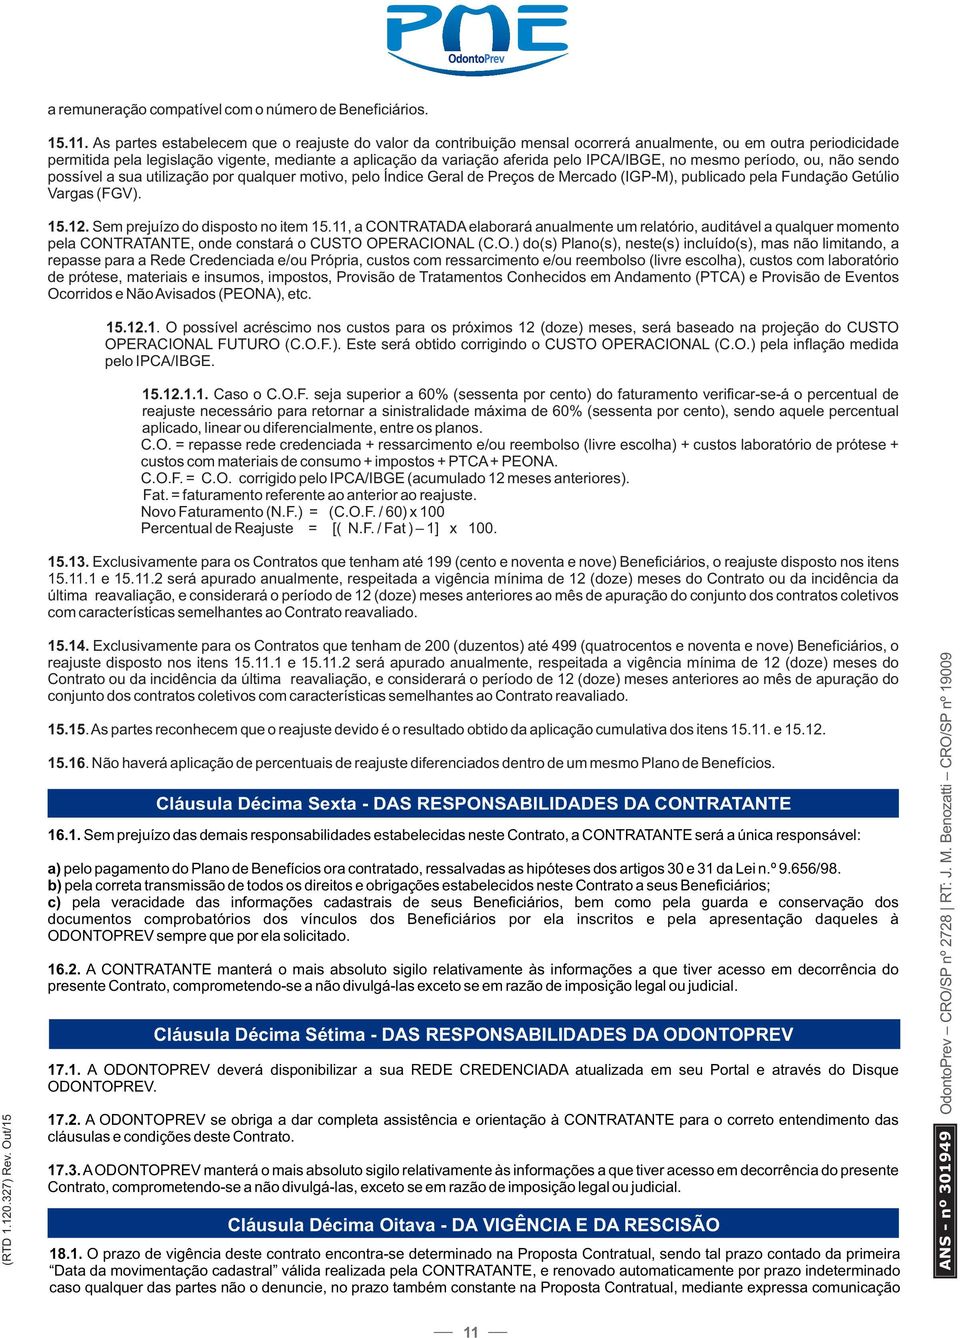 IPCA/IBGE, no mesmo período, ou, não sendo possível a sua utilização por qualquer motivo, pelo Índice Geral de Preços de Mercado (IGP-M), publicado pela Fundação Getúlio Vargas (FGV). 15.12.